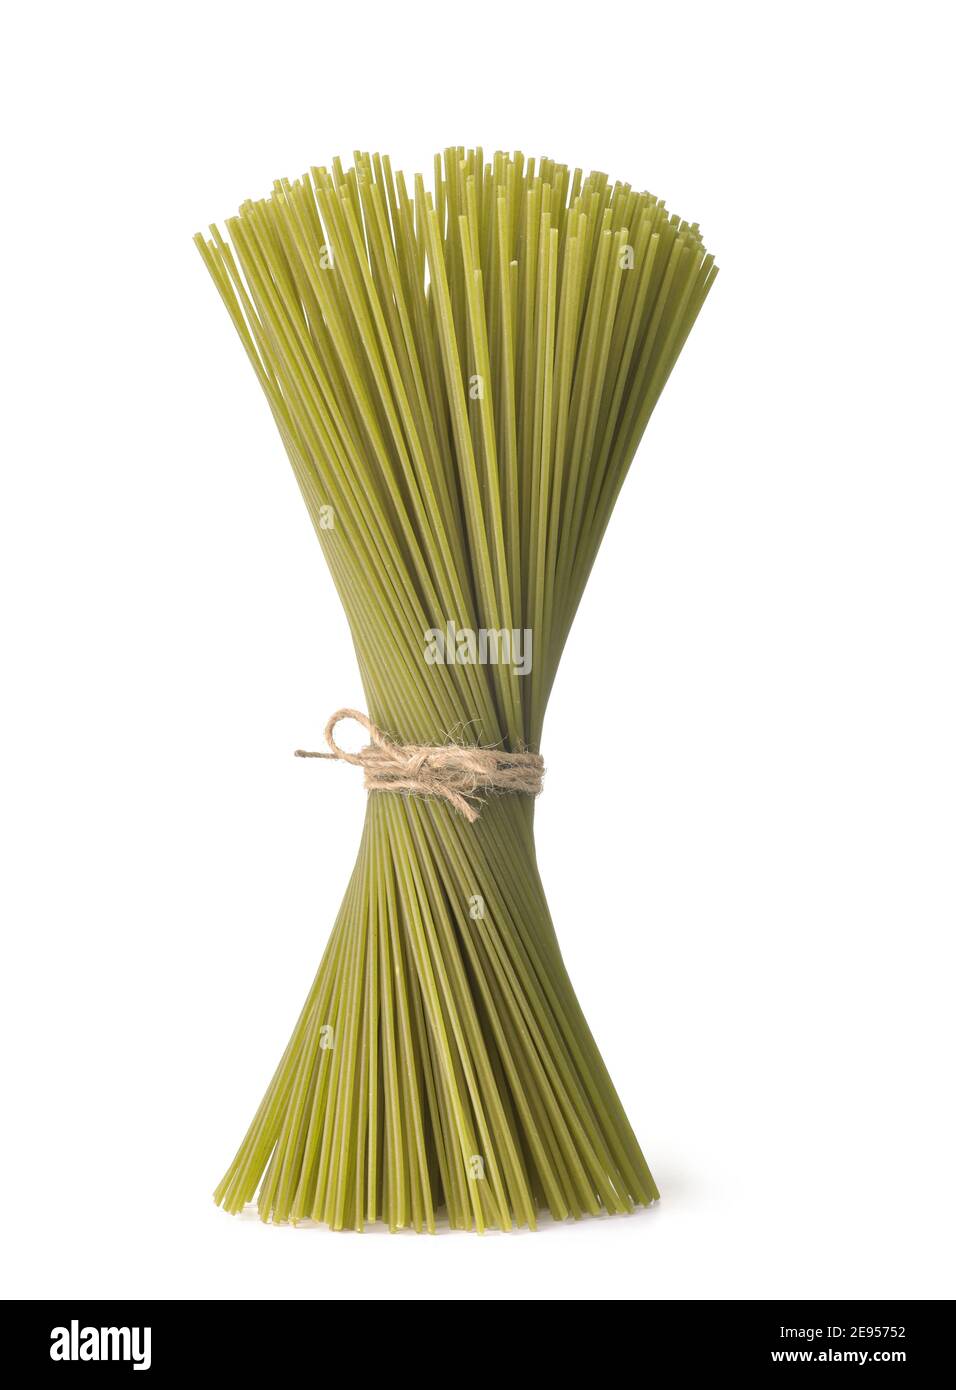 Bouquet de spaghetti d'épinards non cuits verts isolés sur blanc Banque D'Images